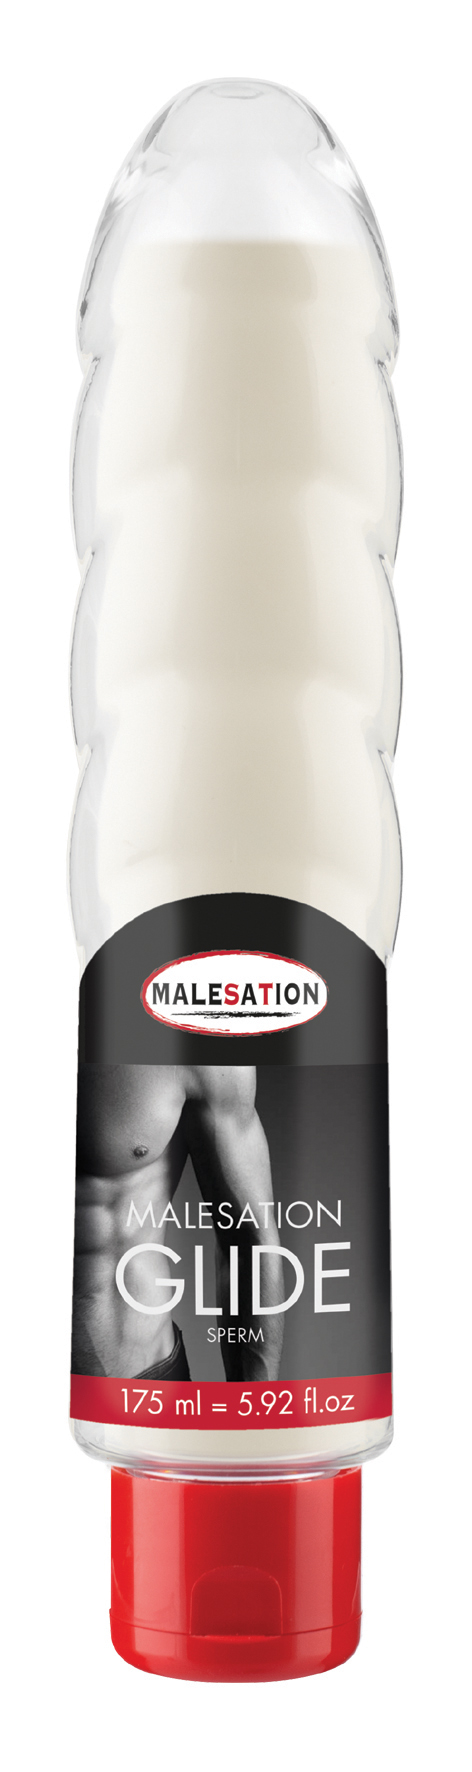 MALESATION Glide Sperm 175 ml